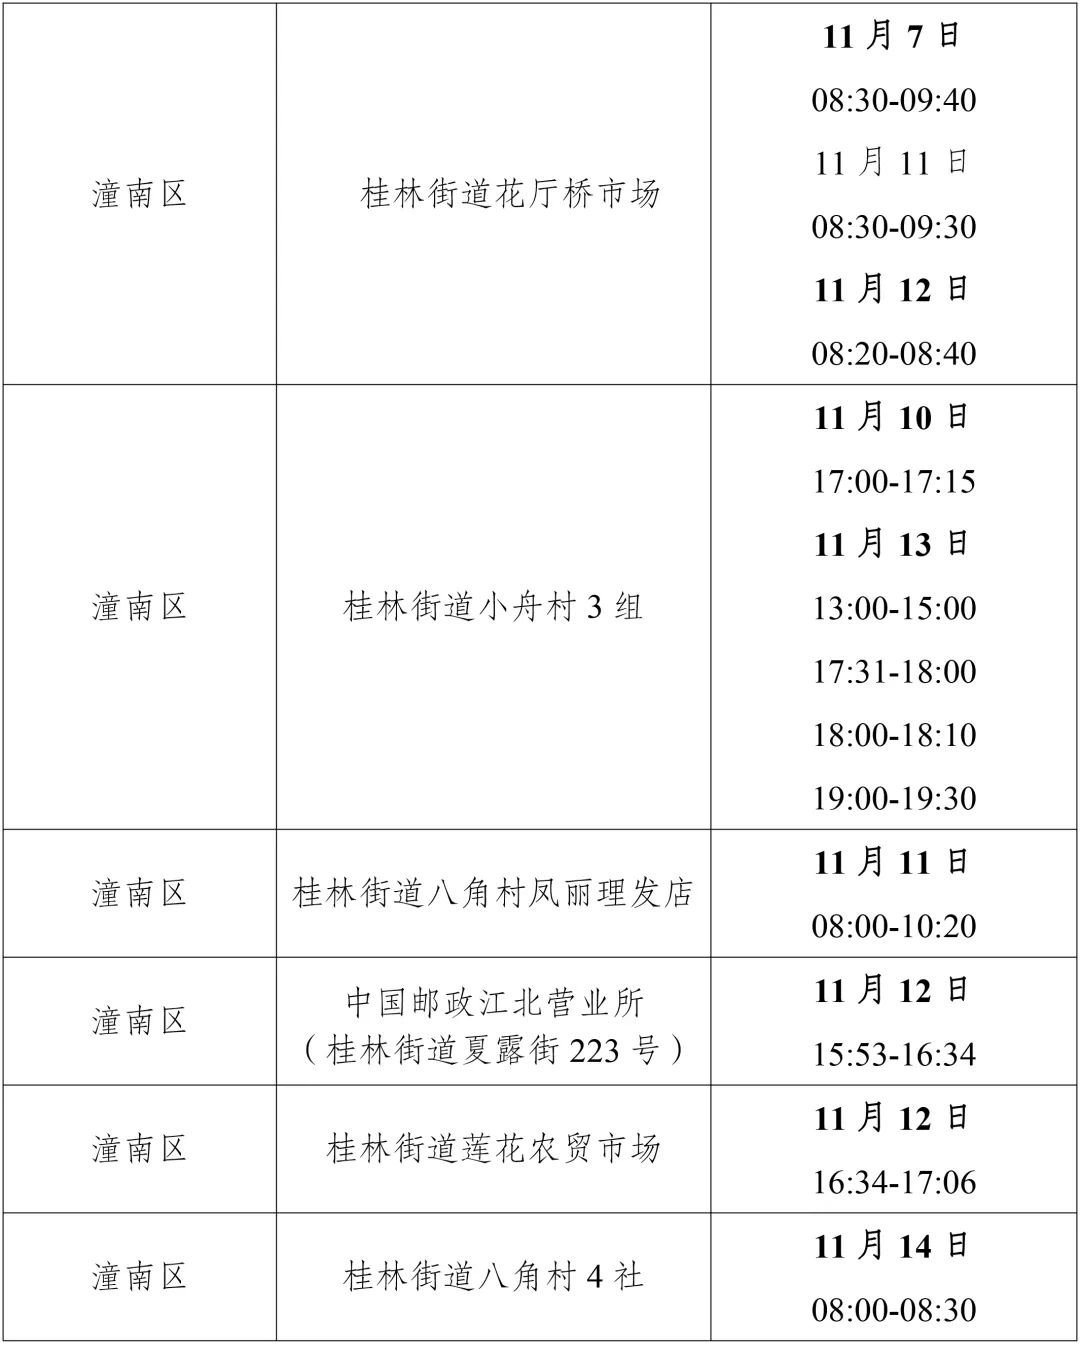 11月15日重庆潼南新增病例活动轨迹公布